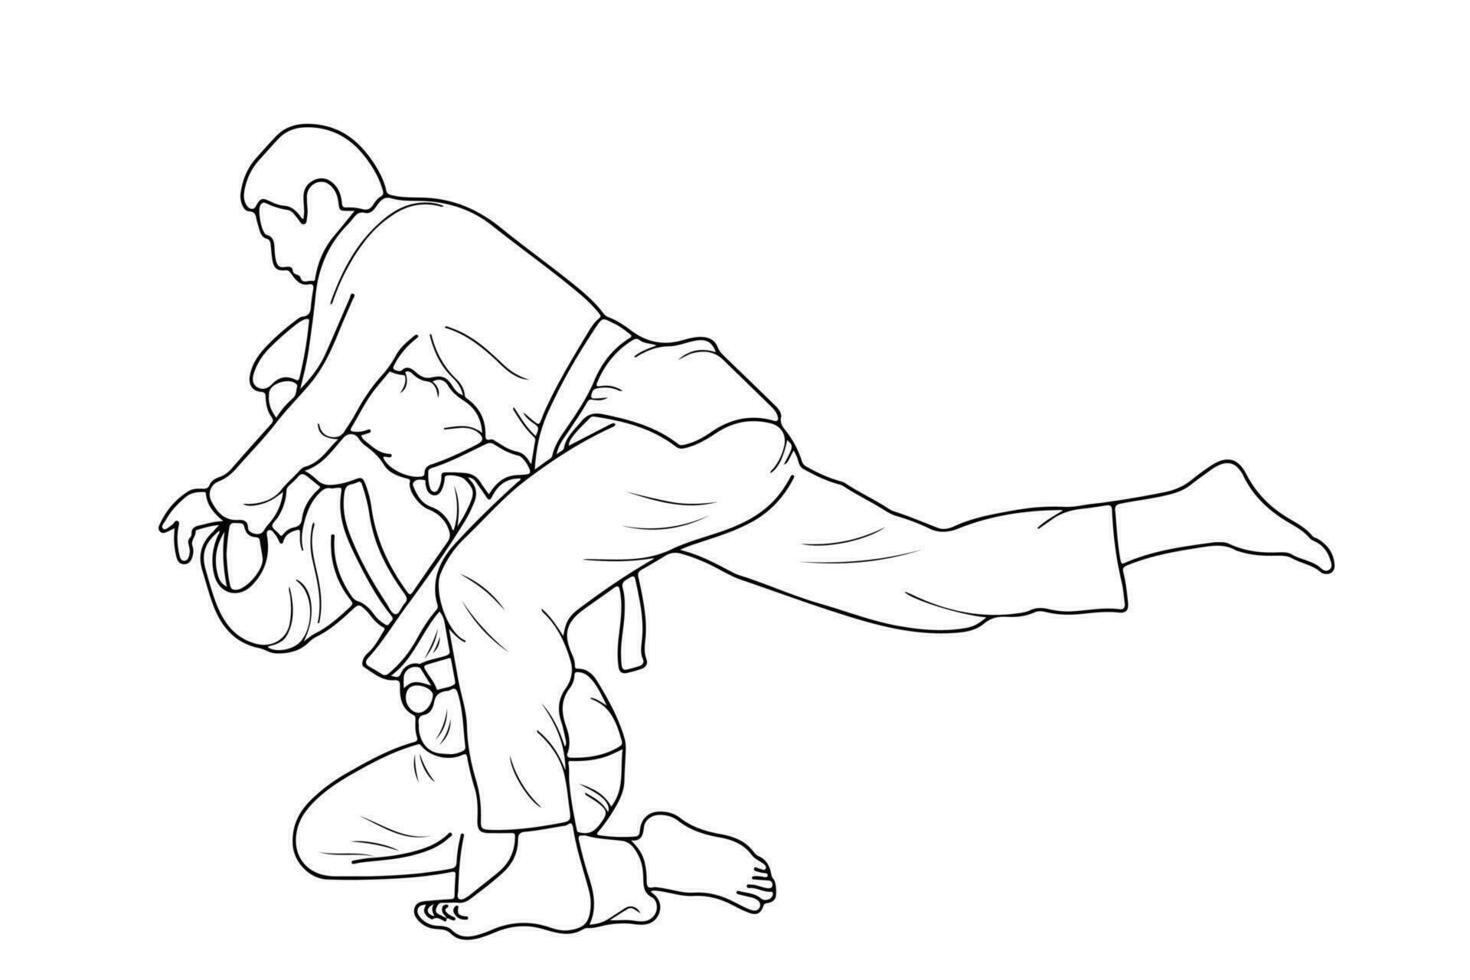 línea dibujo de dos joven juguetón judoka combatiente. judoista, judoca, atleta, duelo, luchar, judo vector